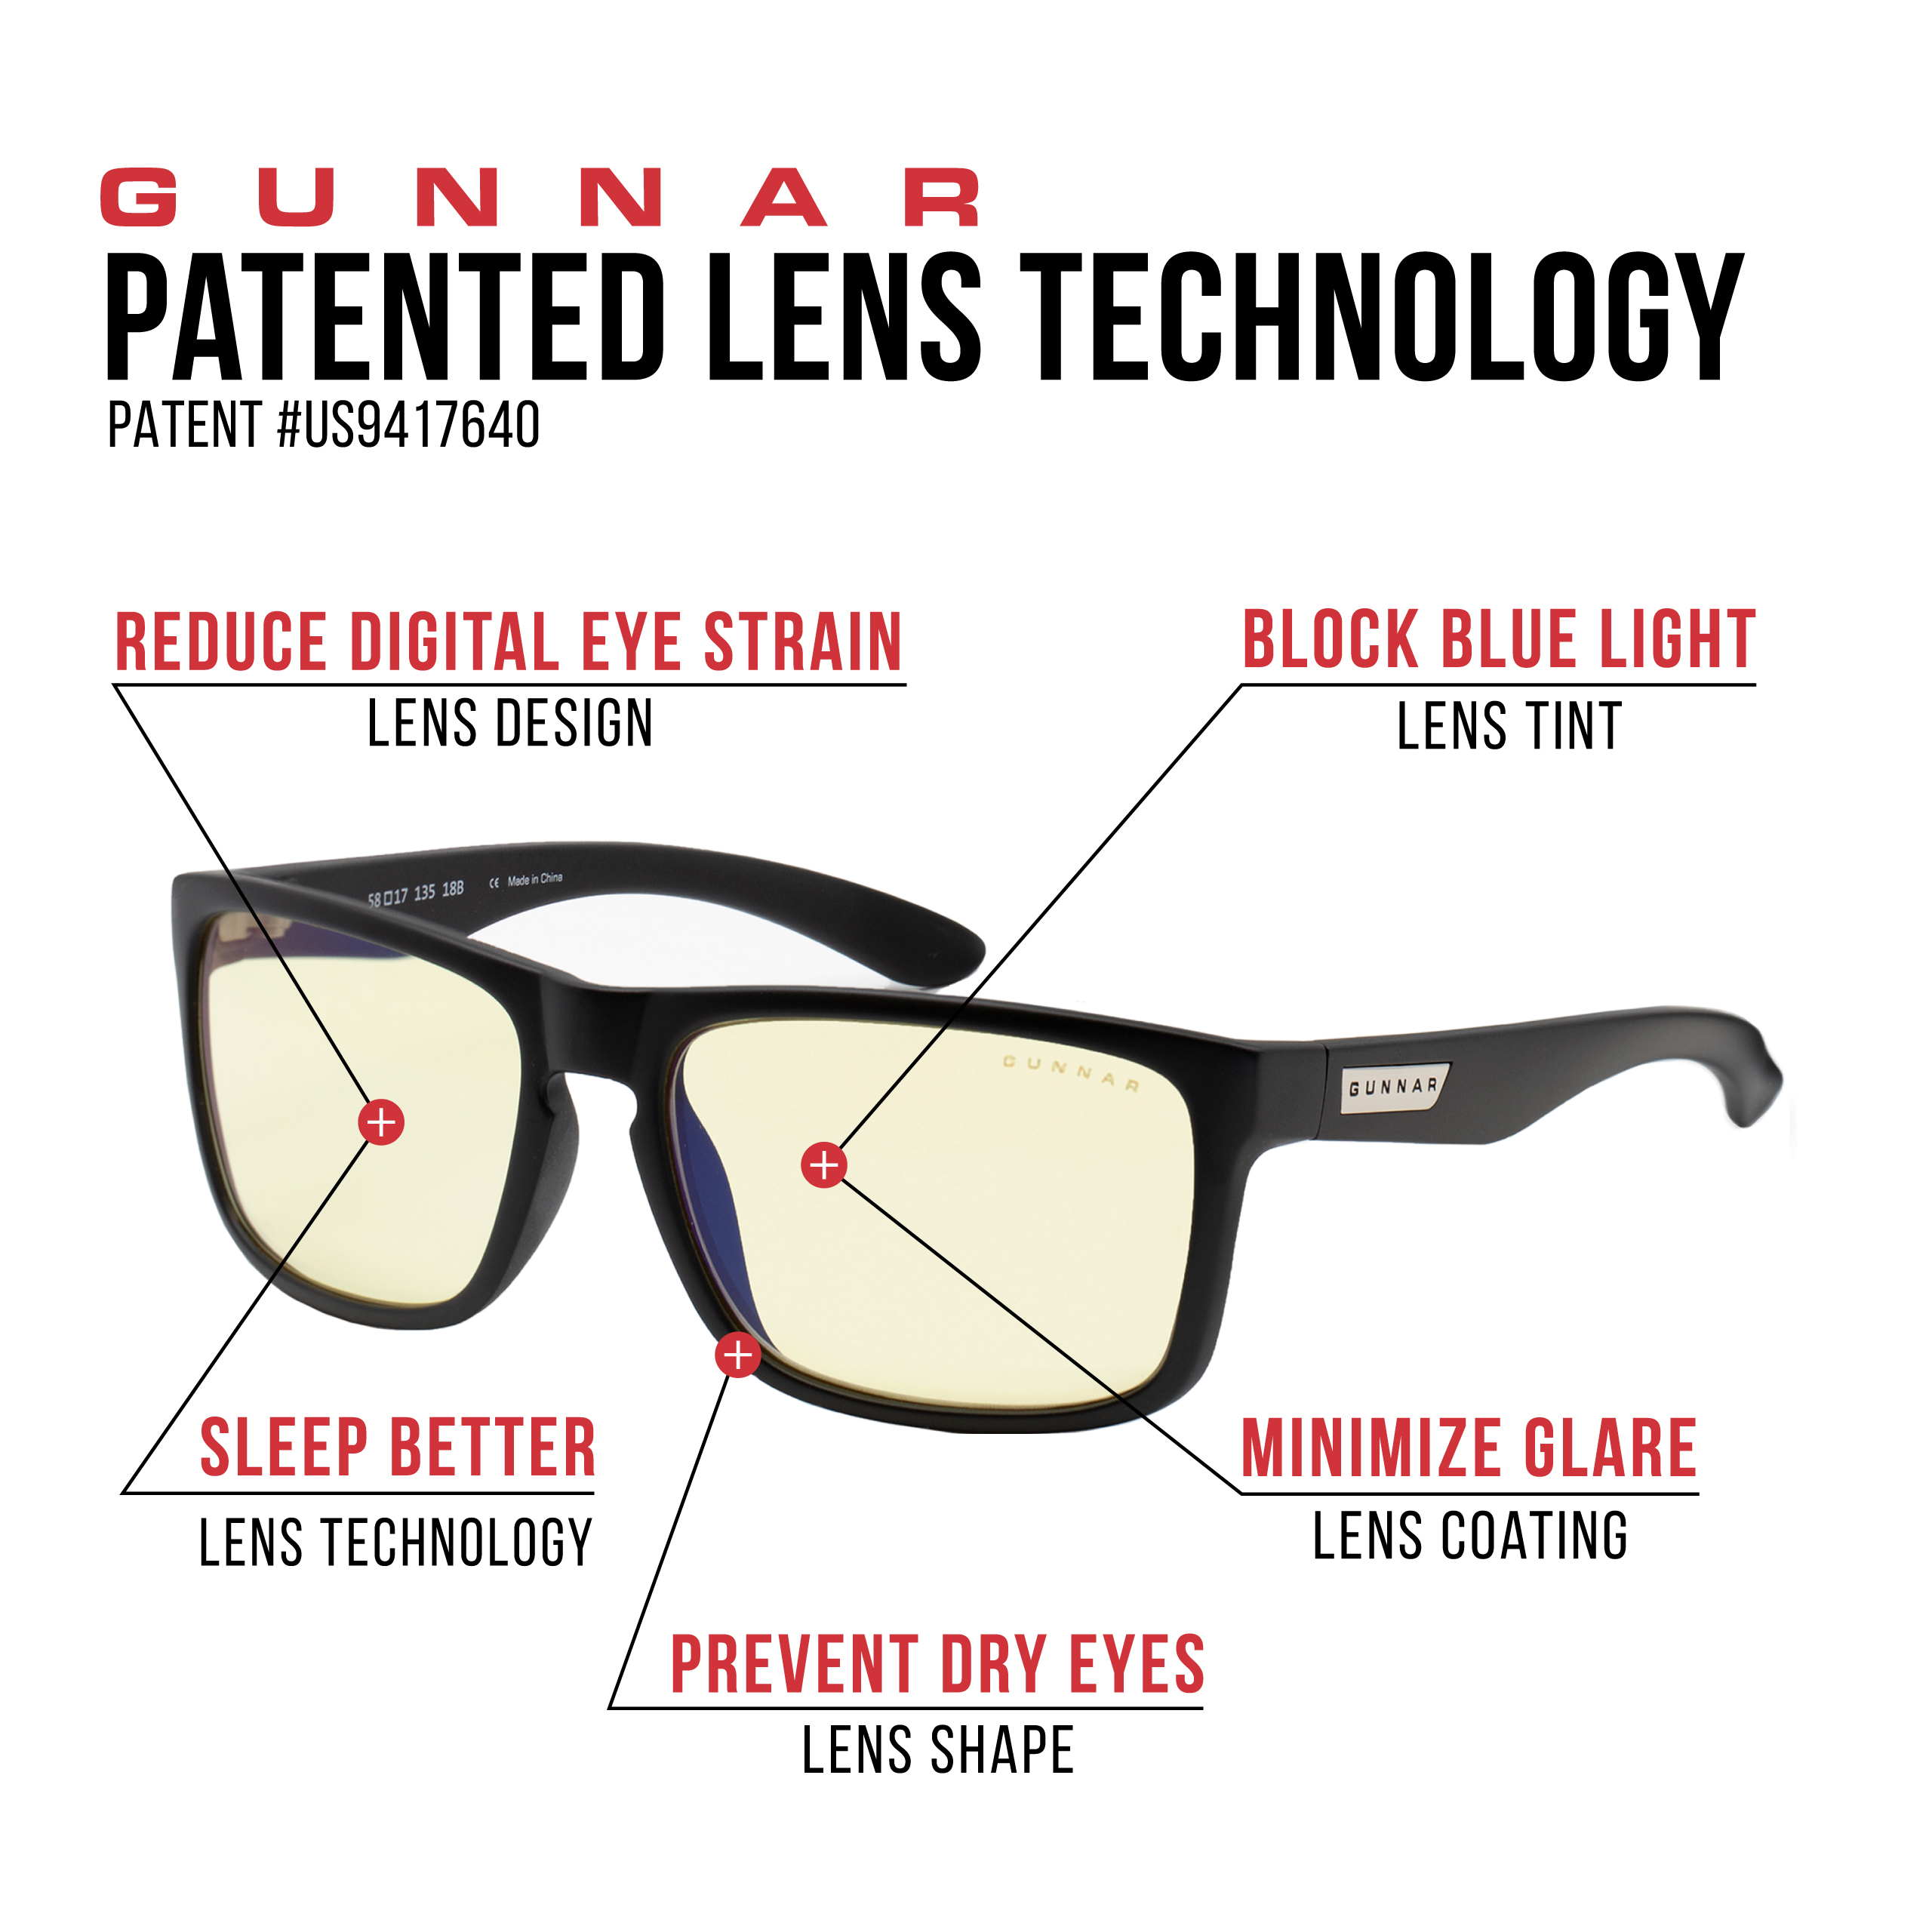 GUNNAR Intercept, Onyx Tönung, Amber Blaulichtfilter, Gaming Brille Premium, Rahmen, UV-Schutz